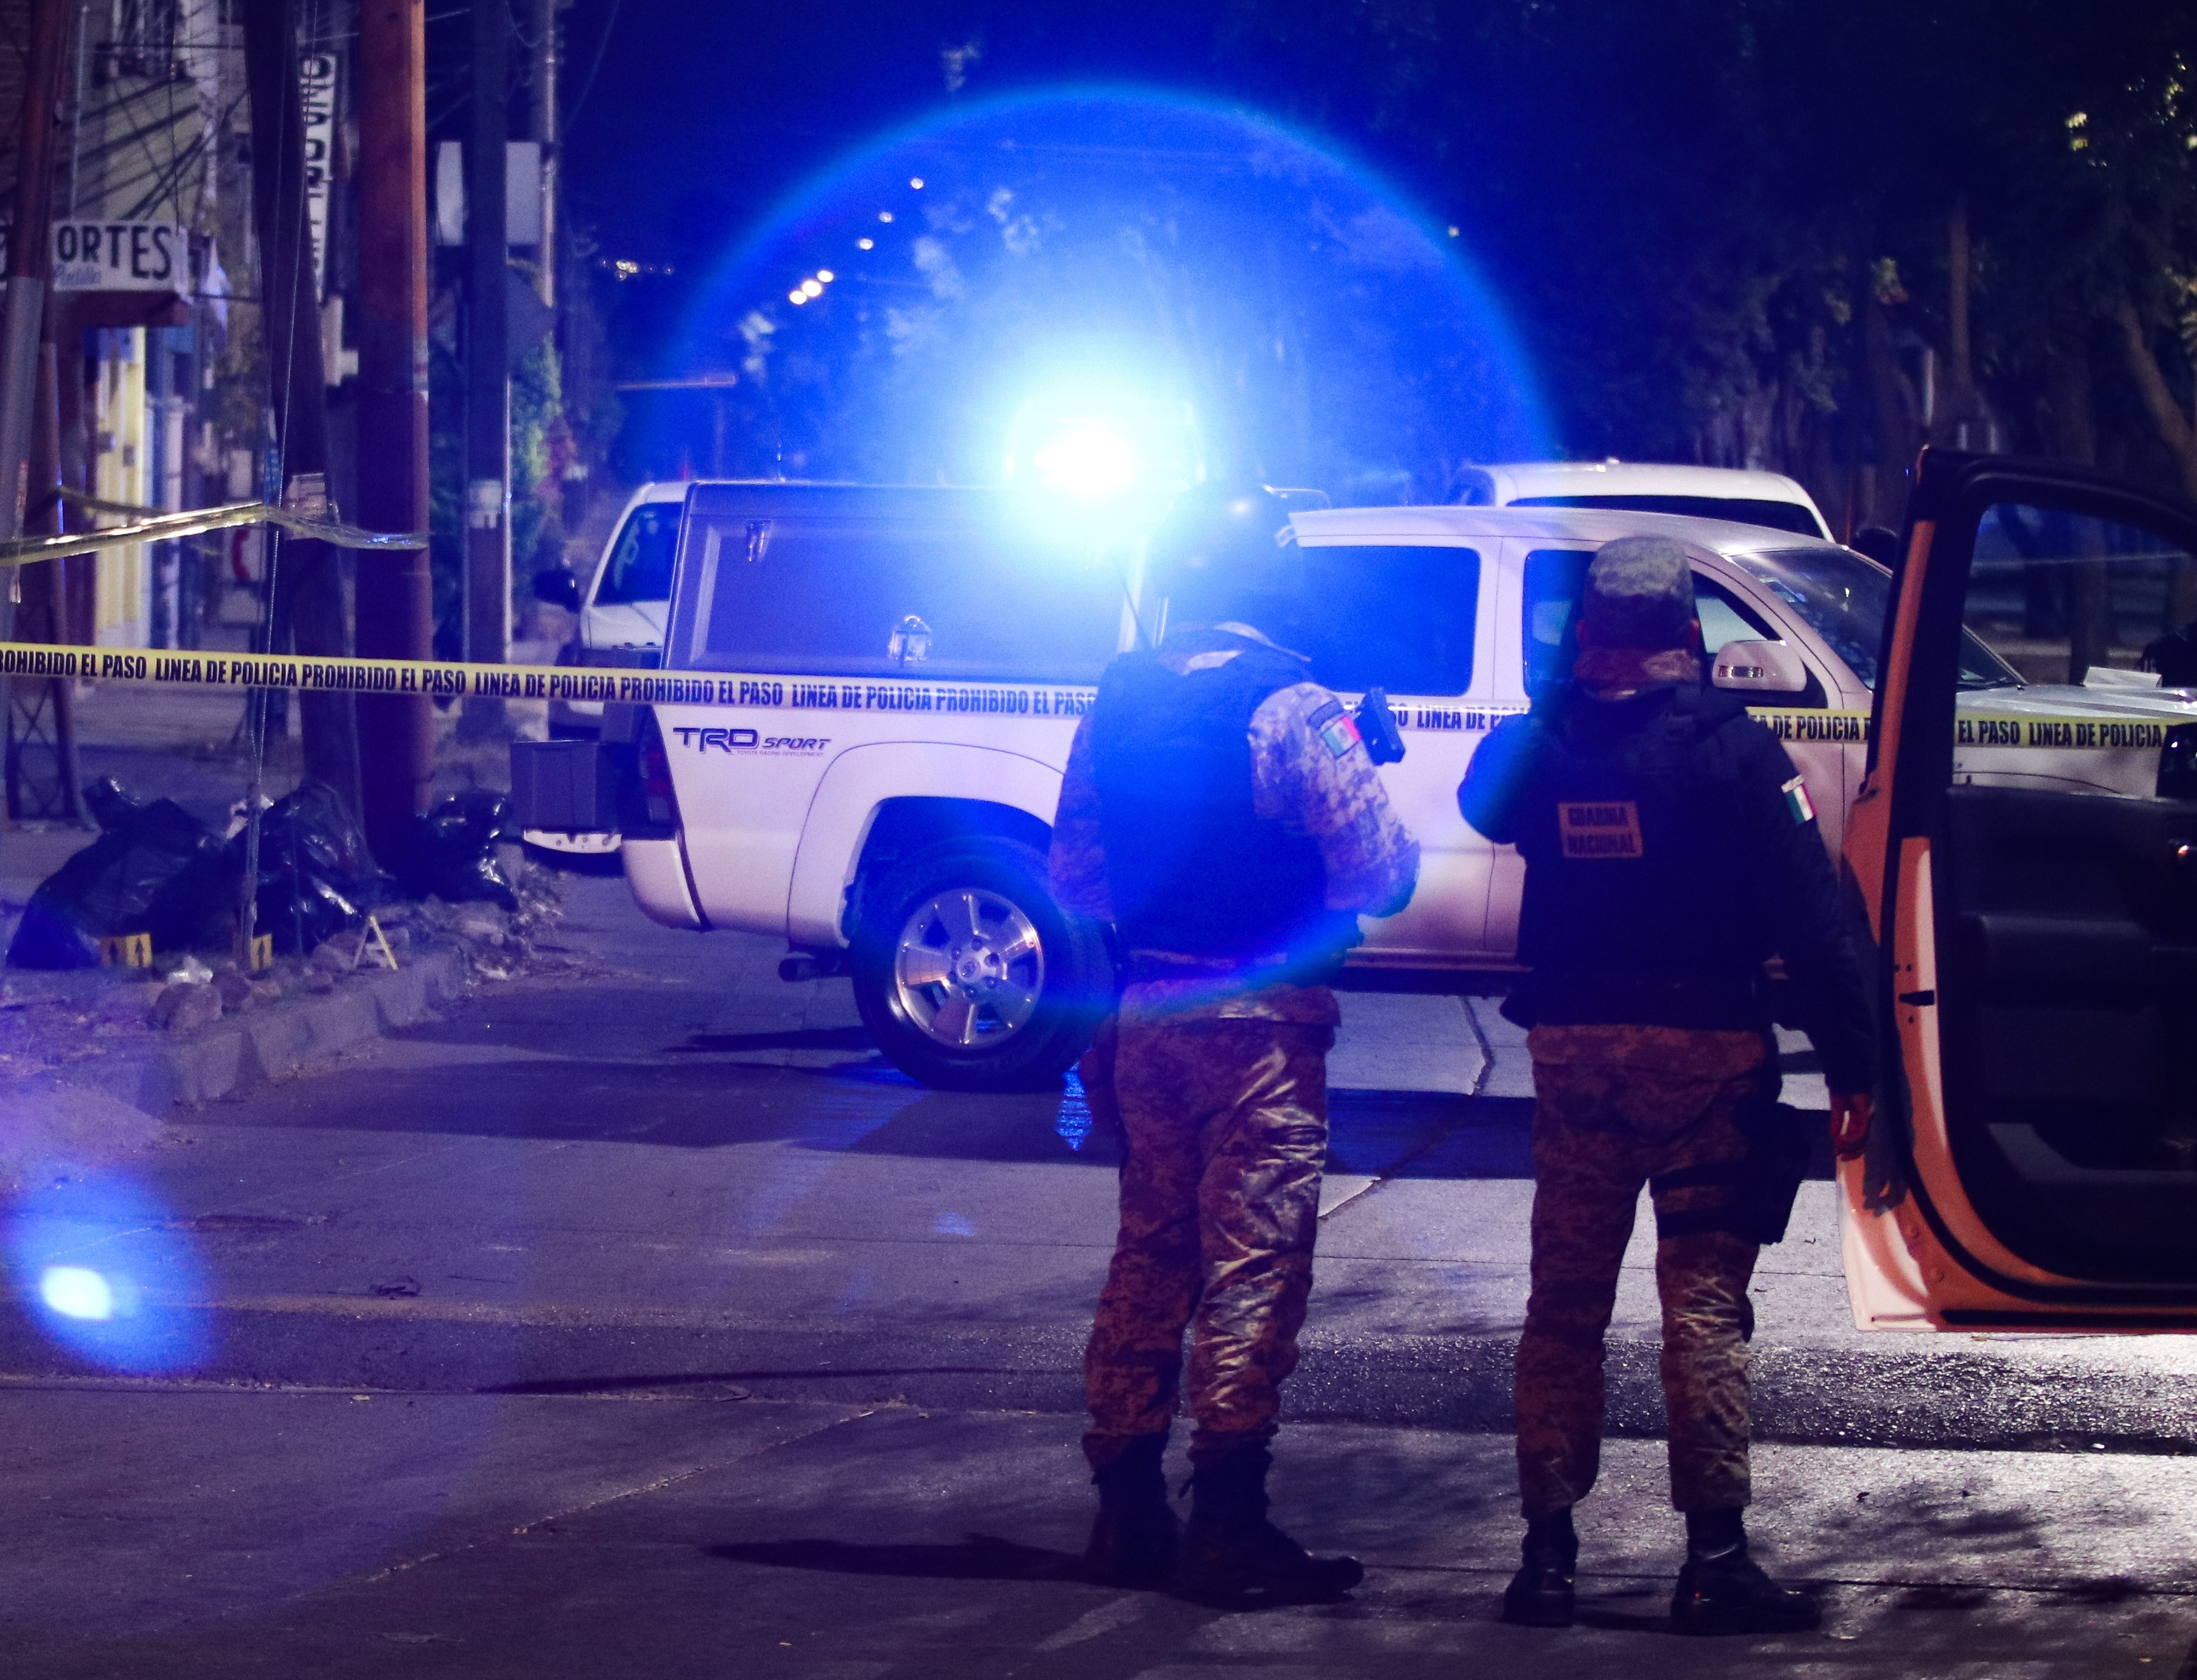 Agentes federales resguardan la zona donde cinco personas fueron asesinadas en León, estado de Guanajato (Foto: EFE)
